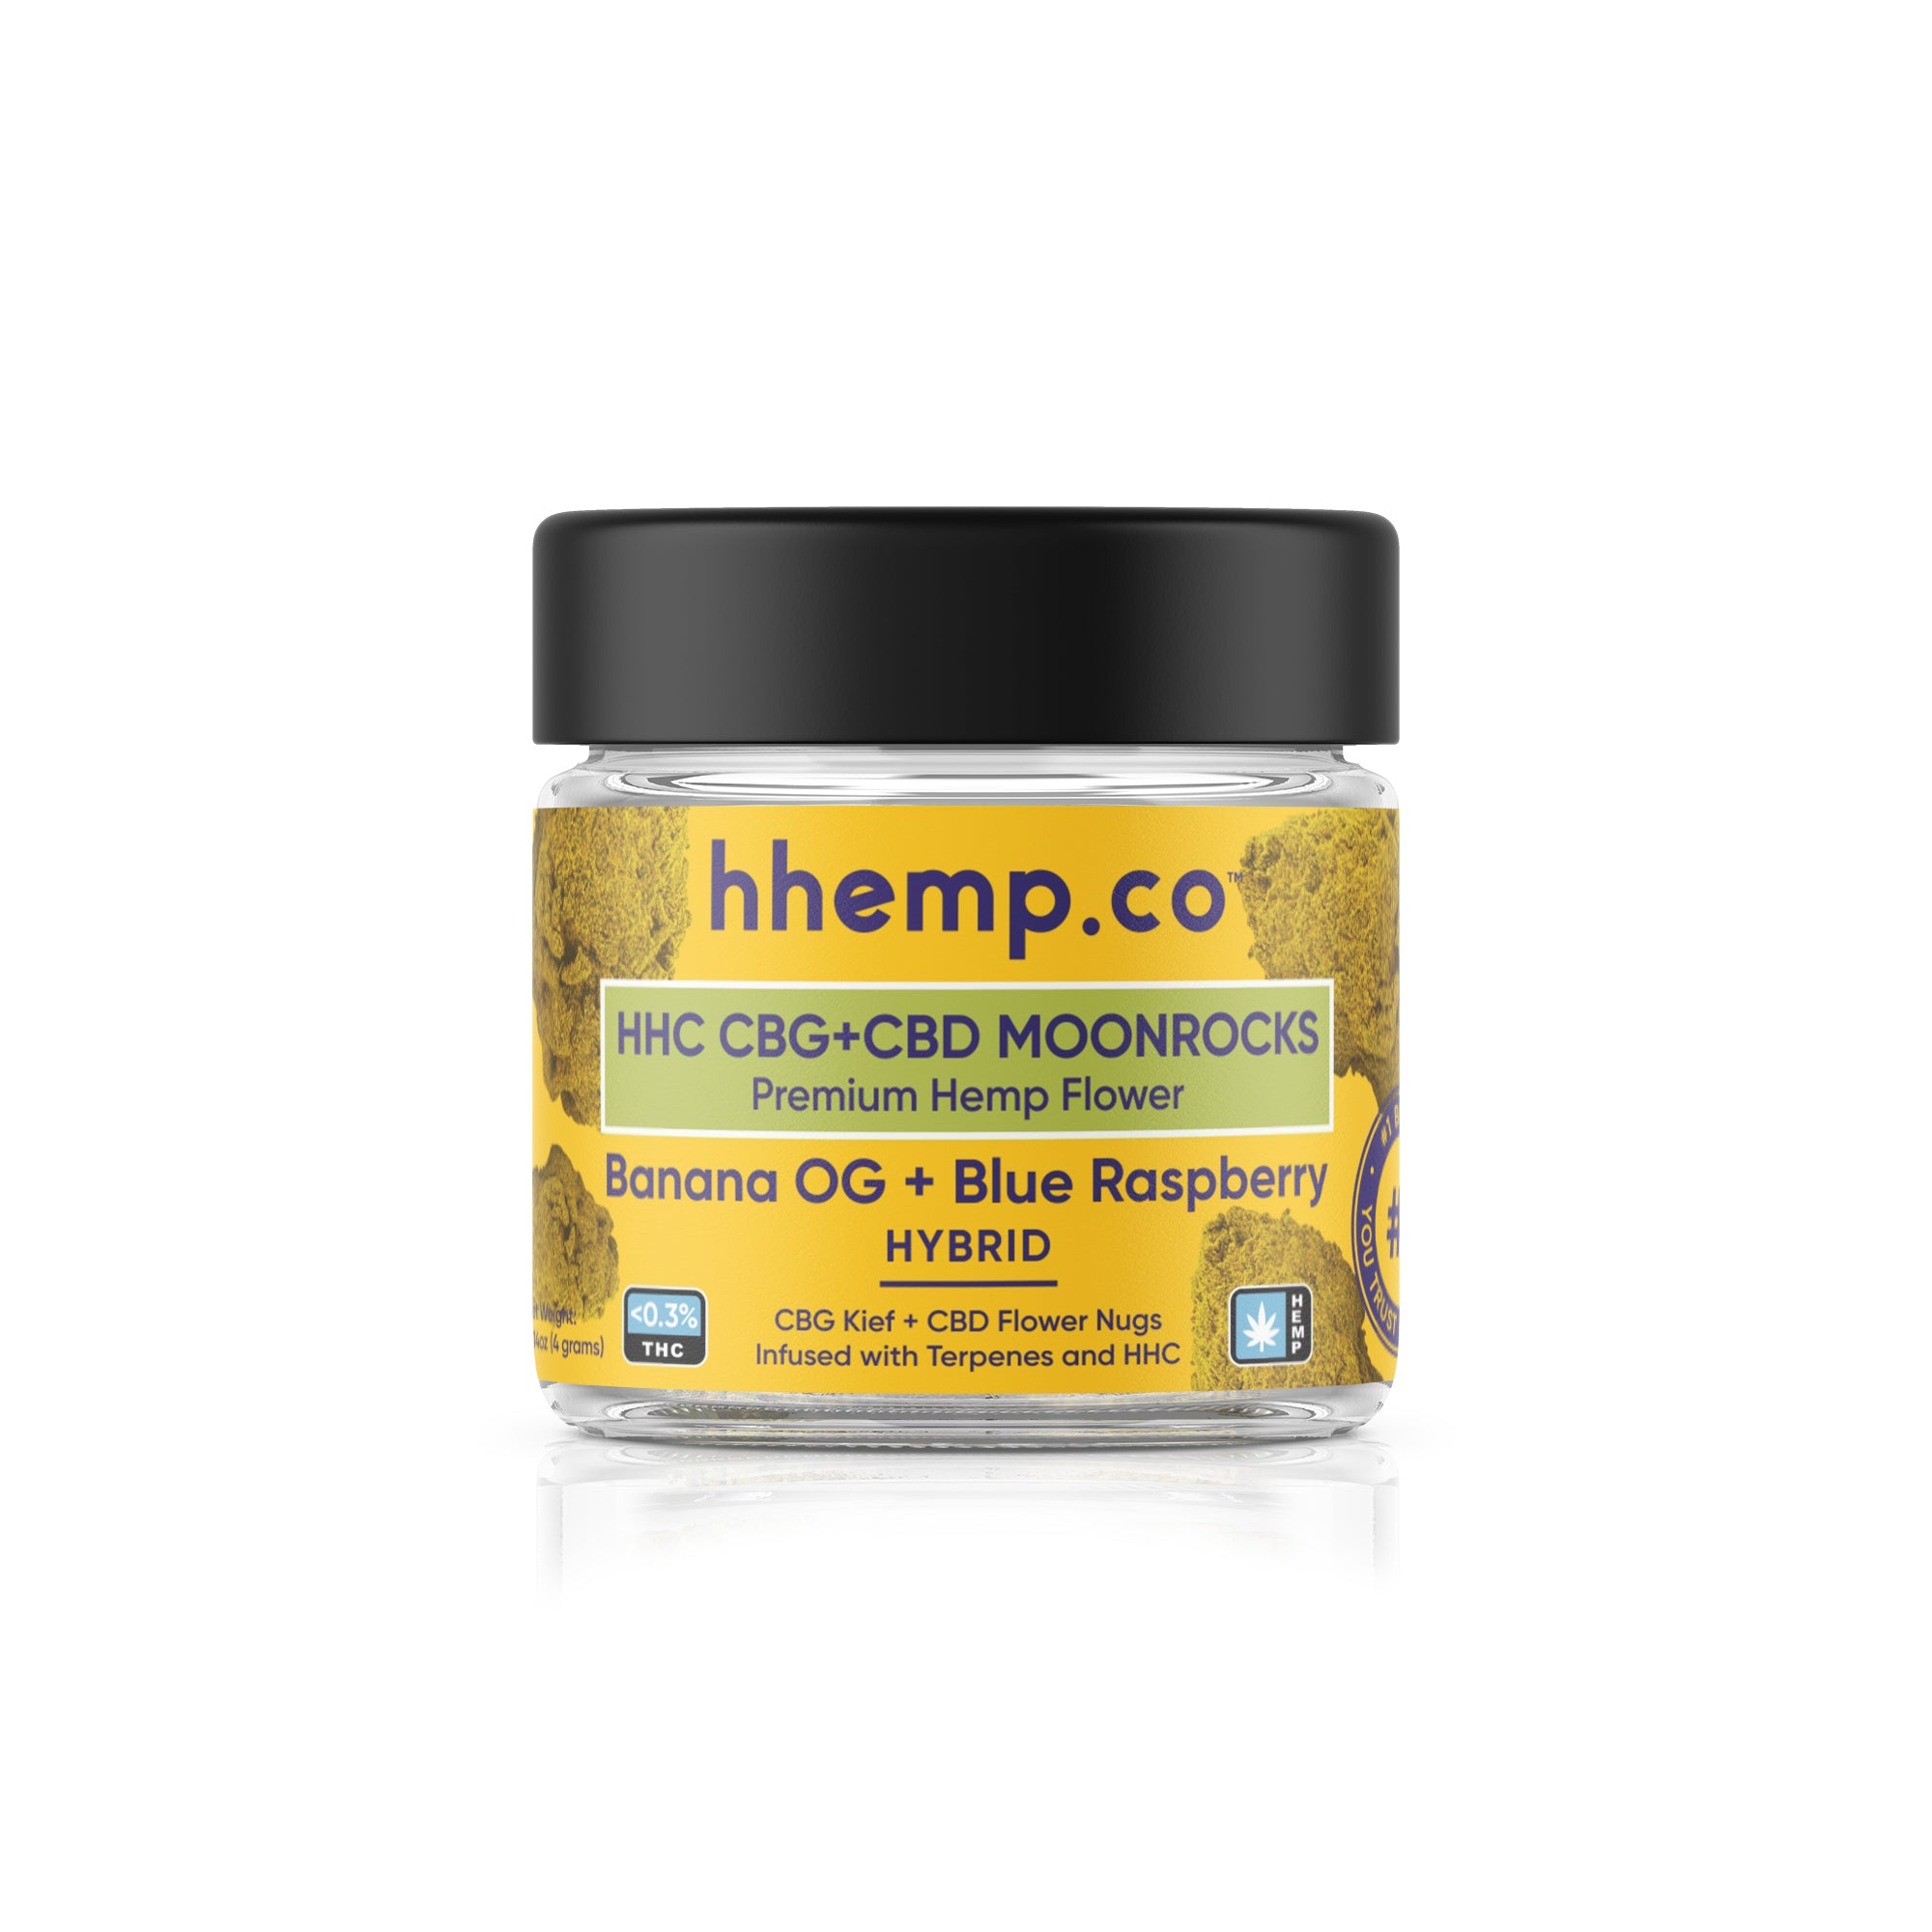 hhemp.co HHC Moonrock Flower - Banana OG+Blue Raspberry (Hybrid)